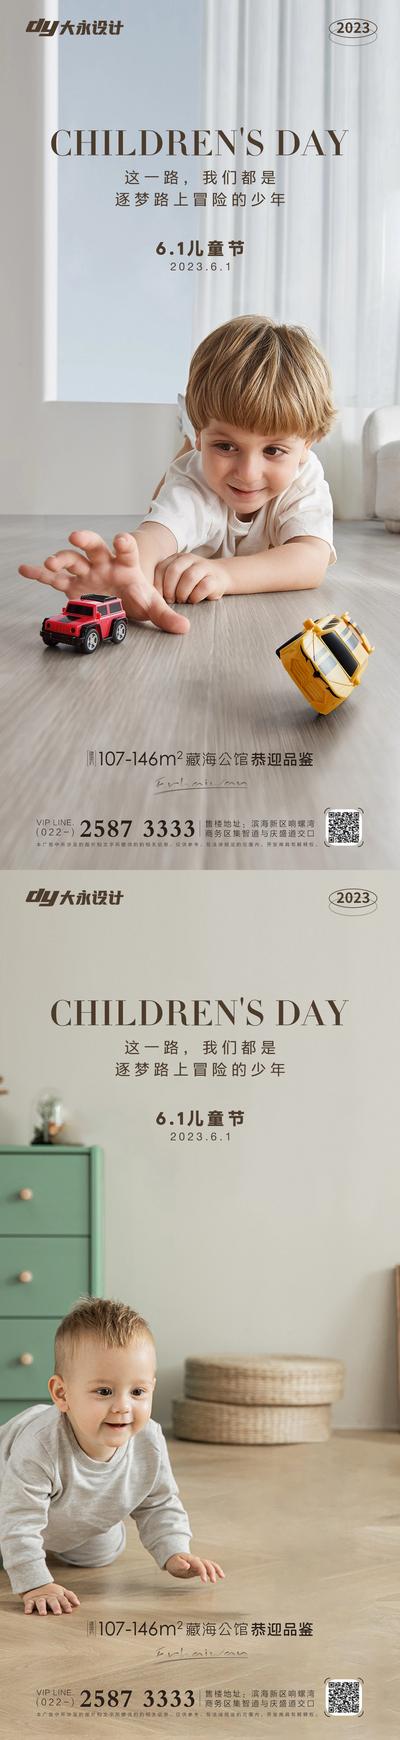 南门网 海报 地产 公历节日 儿童节 大气 简约 儿童 婴儿 温馨 玩具